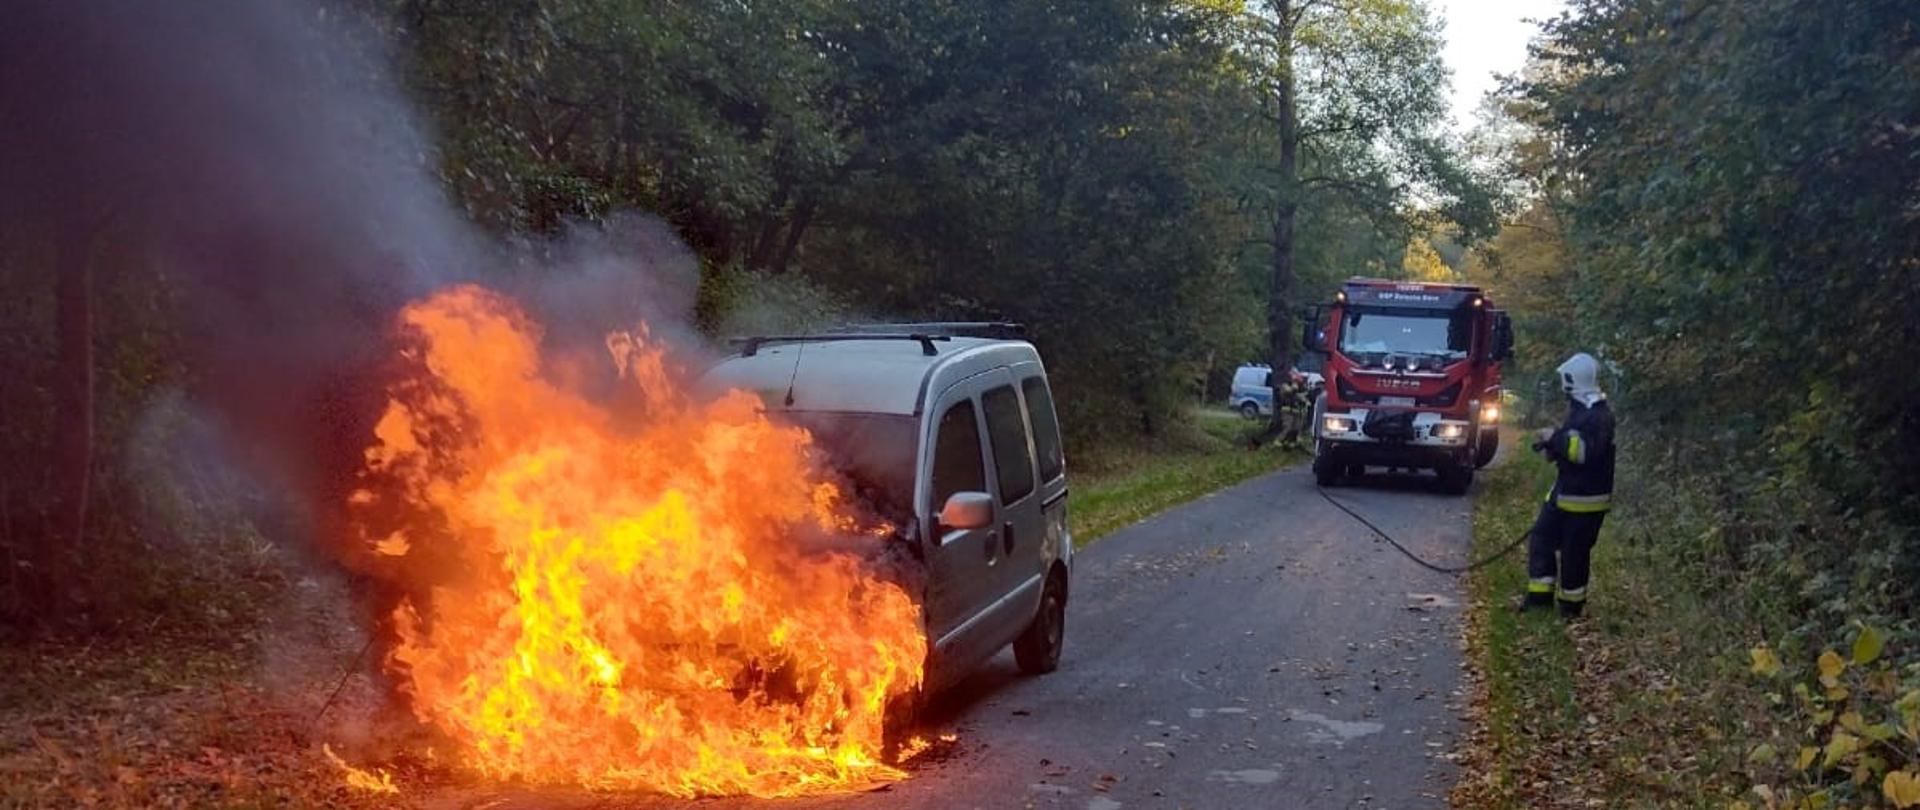 Na drodze przy lesie pali się auto osobowe. Duże płomienie z przodu pojazdu. Za płonącym autem stoi straż pożarna. Z prawej strony strażak z wężem.